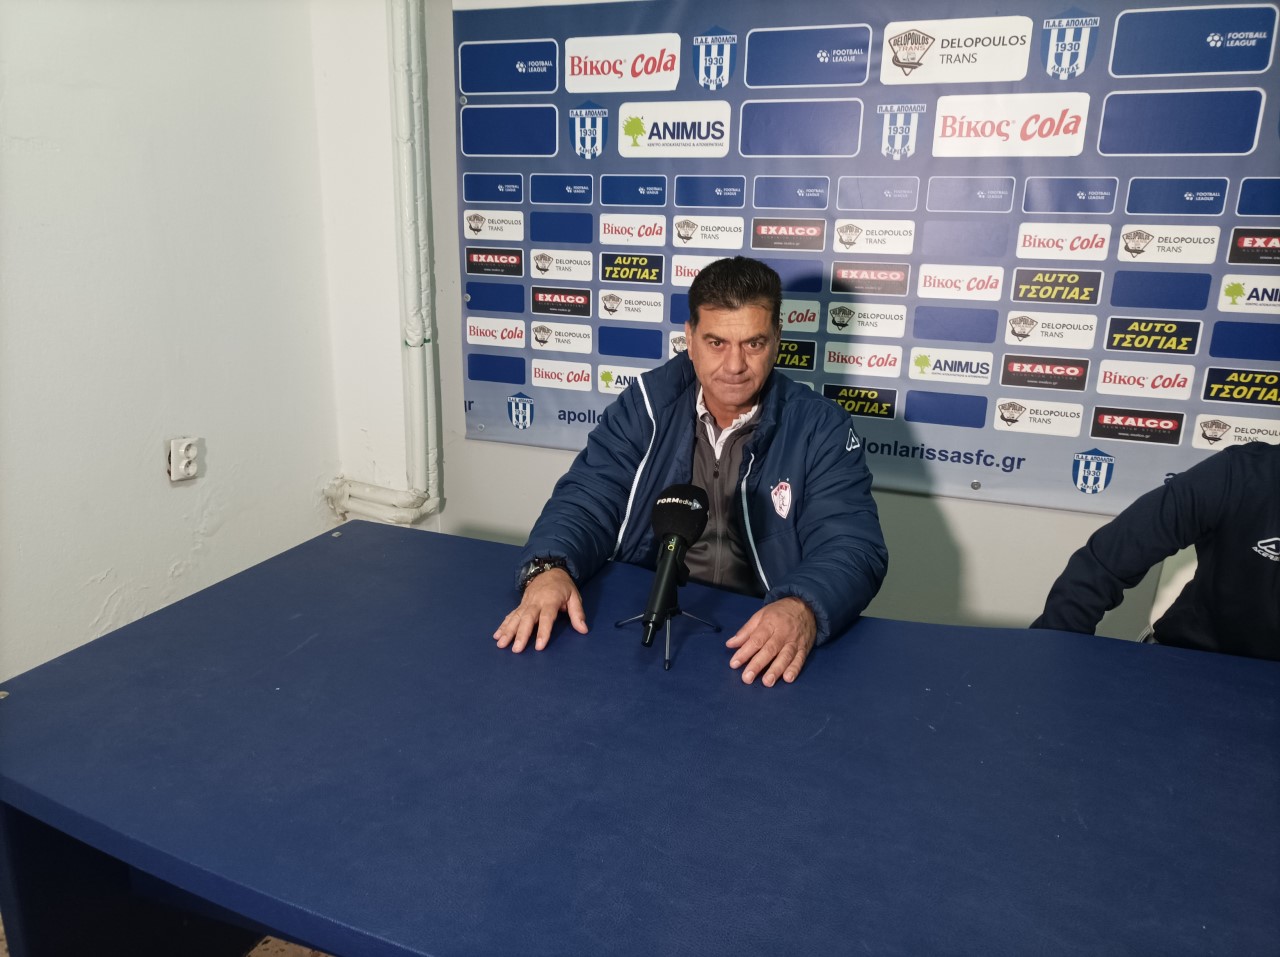 Π. Γκουτσίδης: Παίξαμε καλό ποδόσφαιρο σε μια δύσκολη έδρα